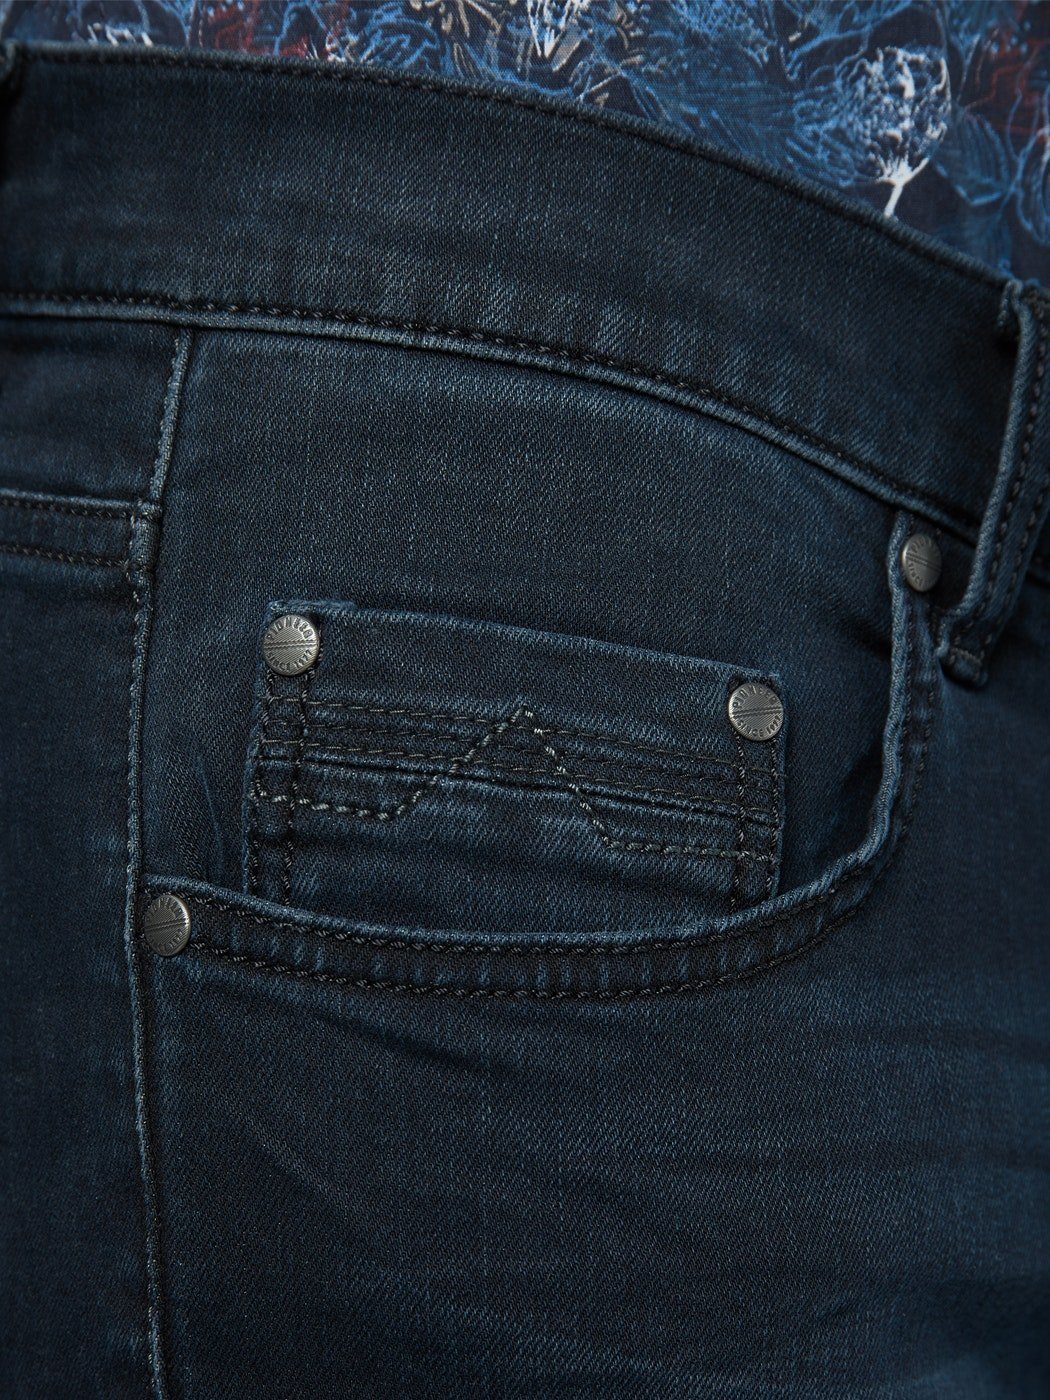 Herren Jeans Pioneer Authentic Jeans 5-Pocket-Jeans PIONEER RANDO MEGAFLEX dark used 1674 9761.440 -